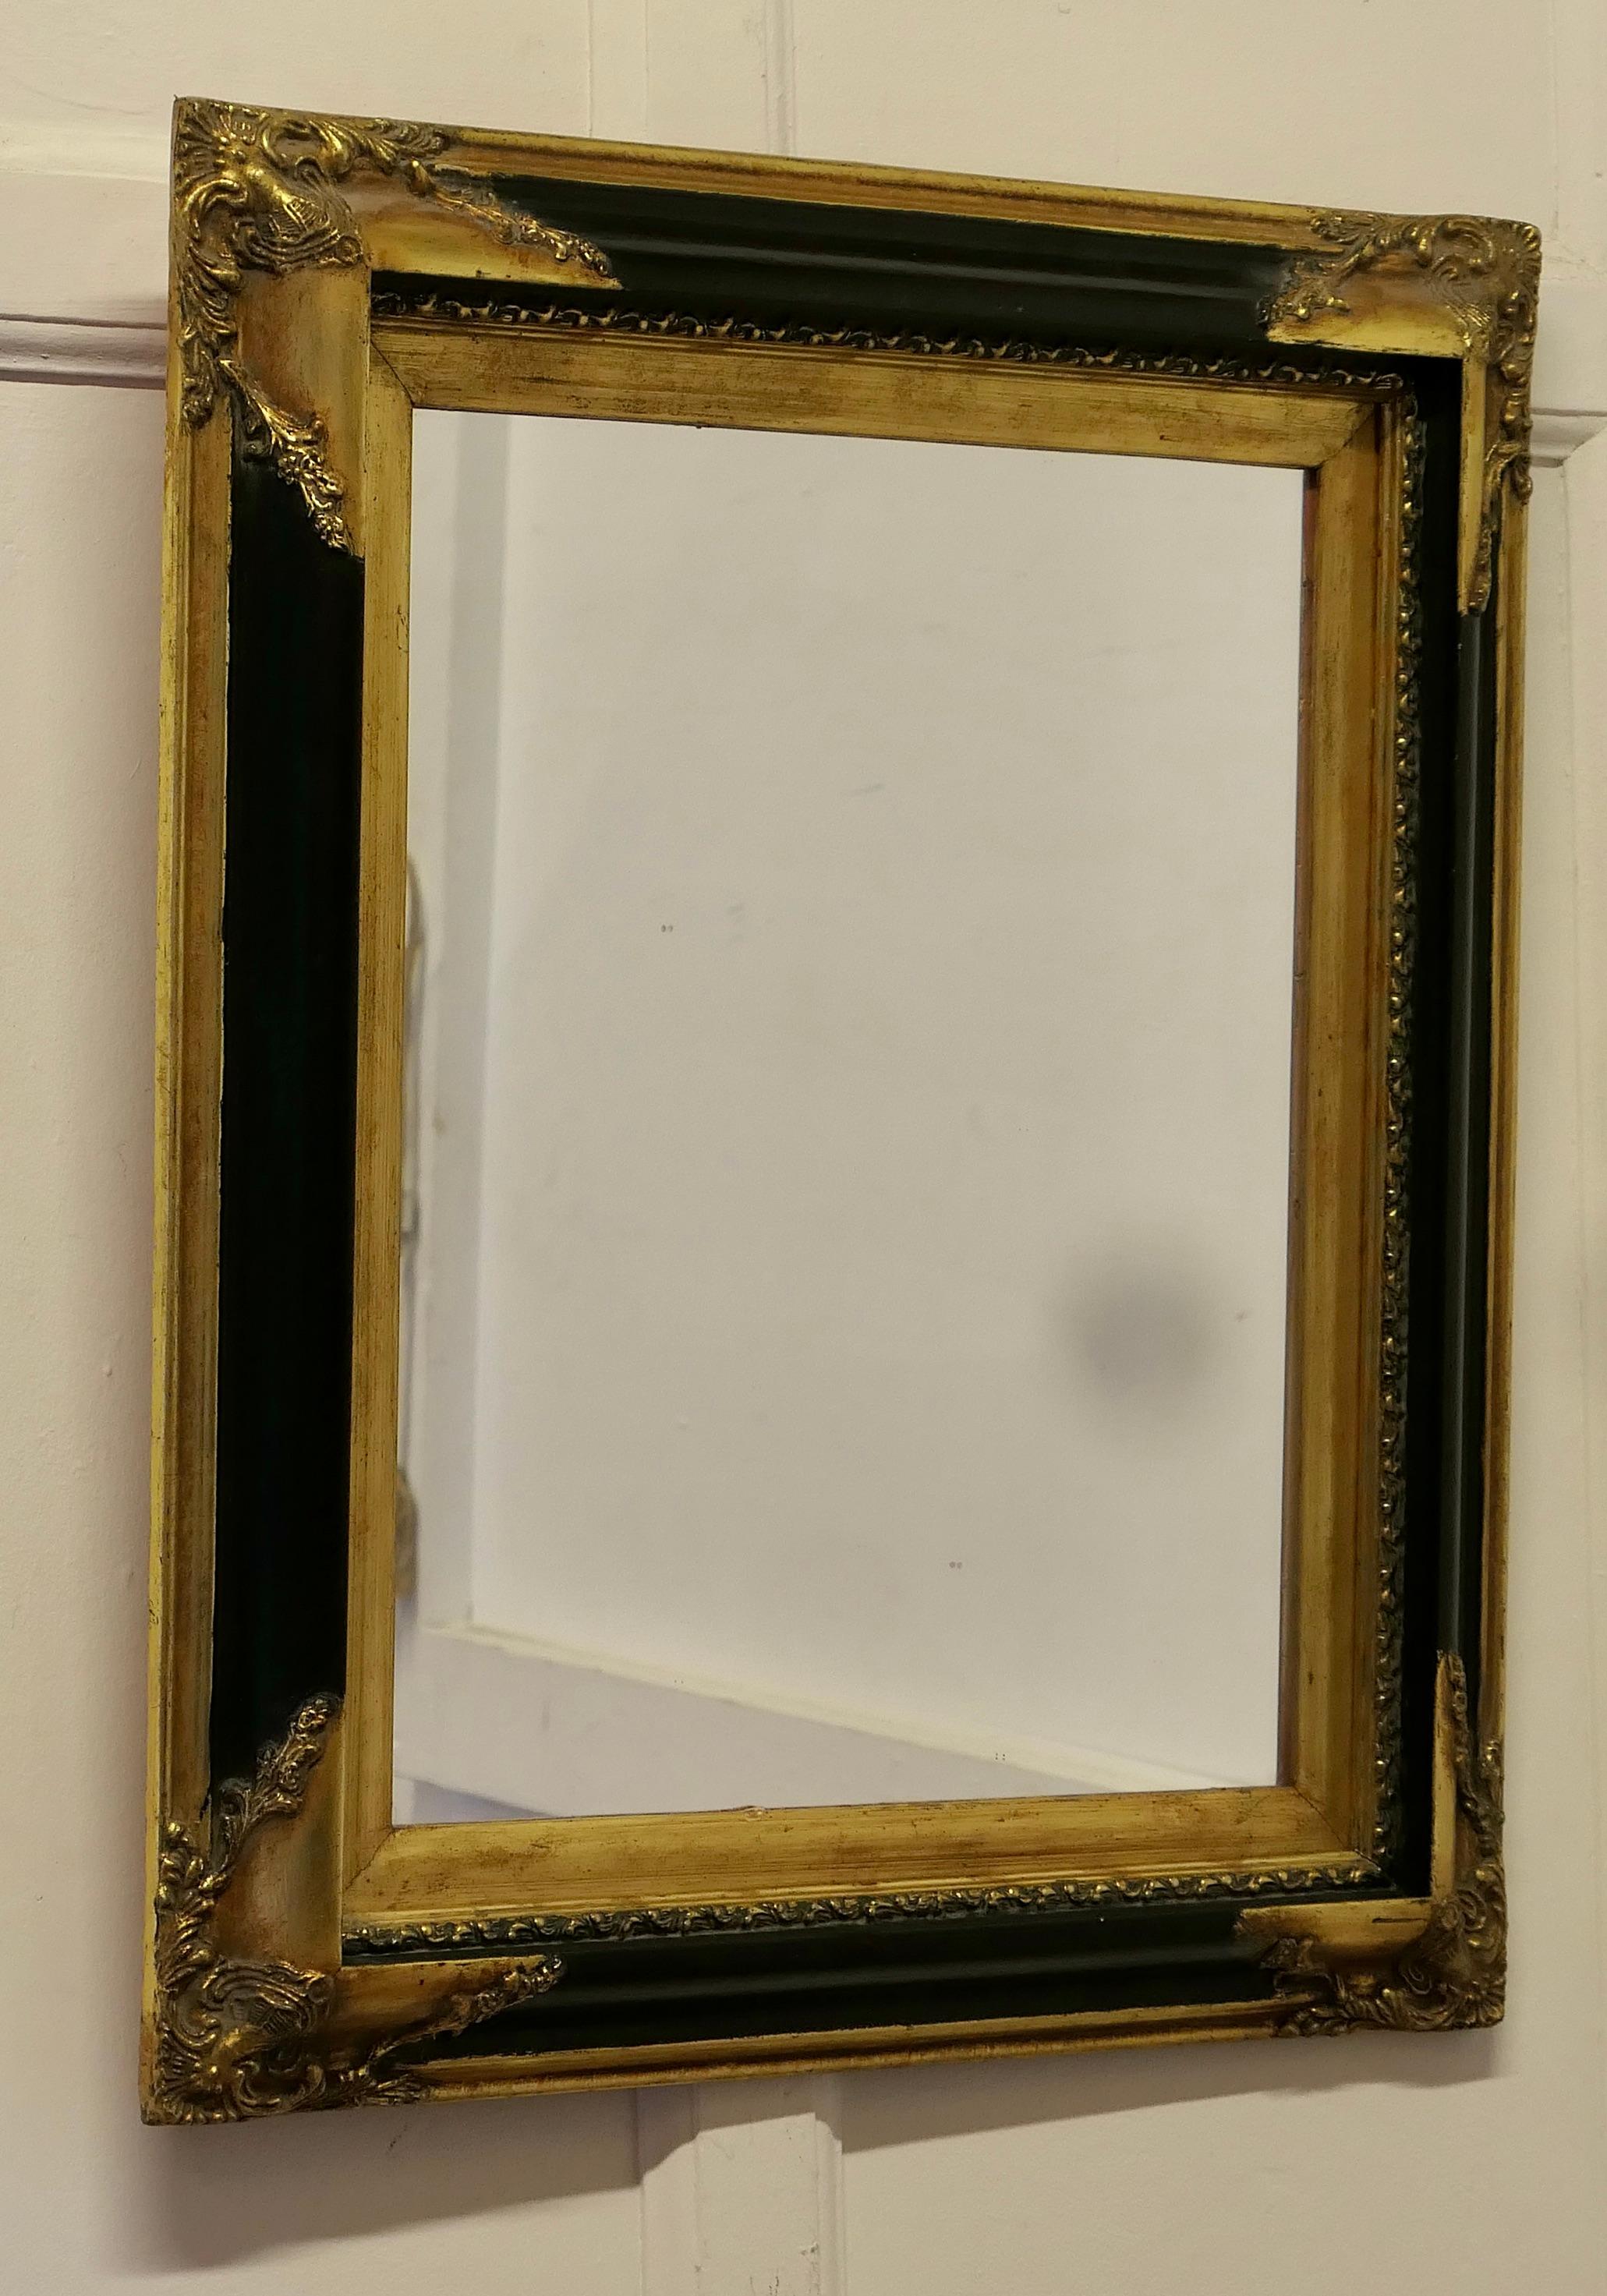 Ein eleganter vergoldeter und schwarzer Wandspiegel aus der Regency-Zeit

Dies ist eine hervorragende Qualität Stück, der Spiegel hat eine rechteckige Glas, das in einem 4 